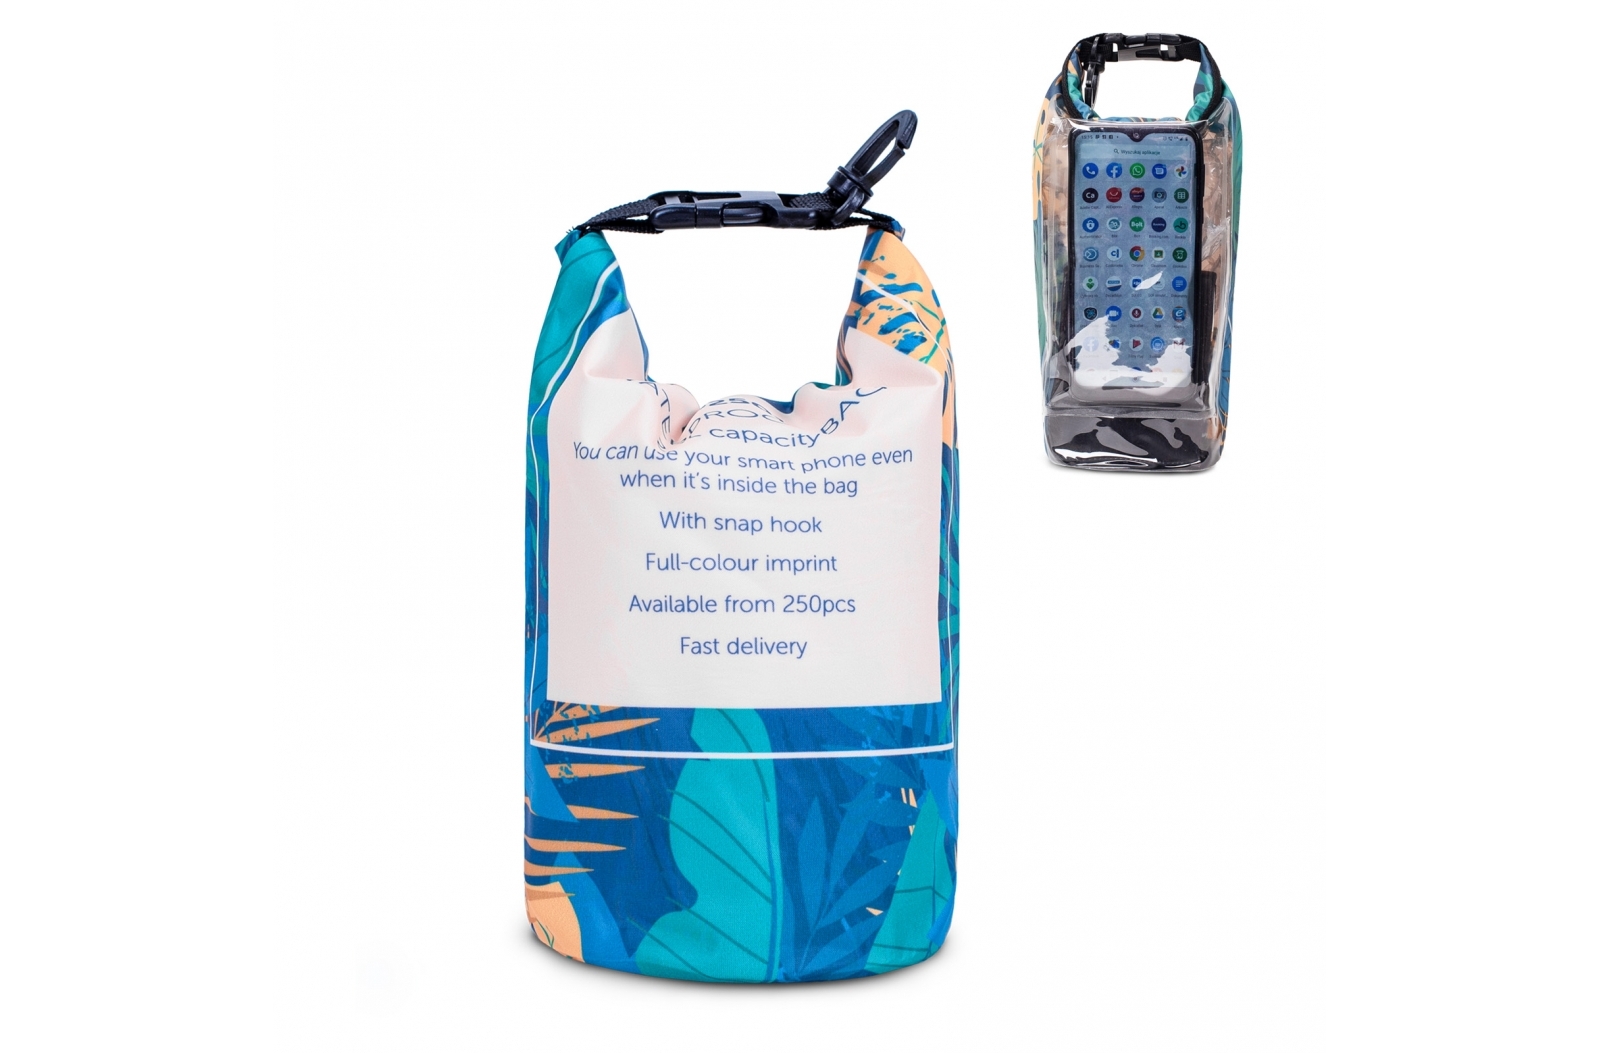 Waterproof Smart Phone Beach Bag - Holdenhurst